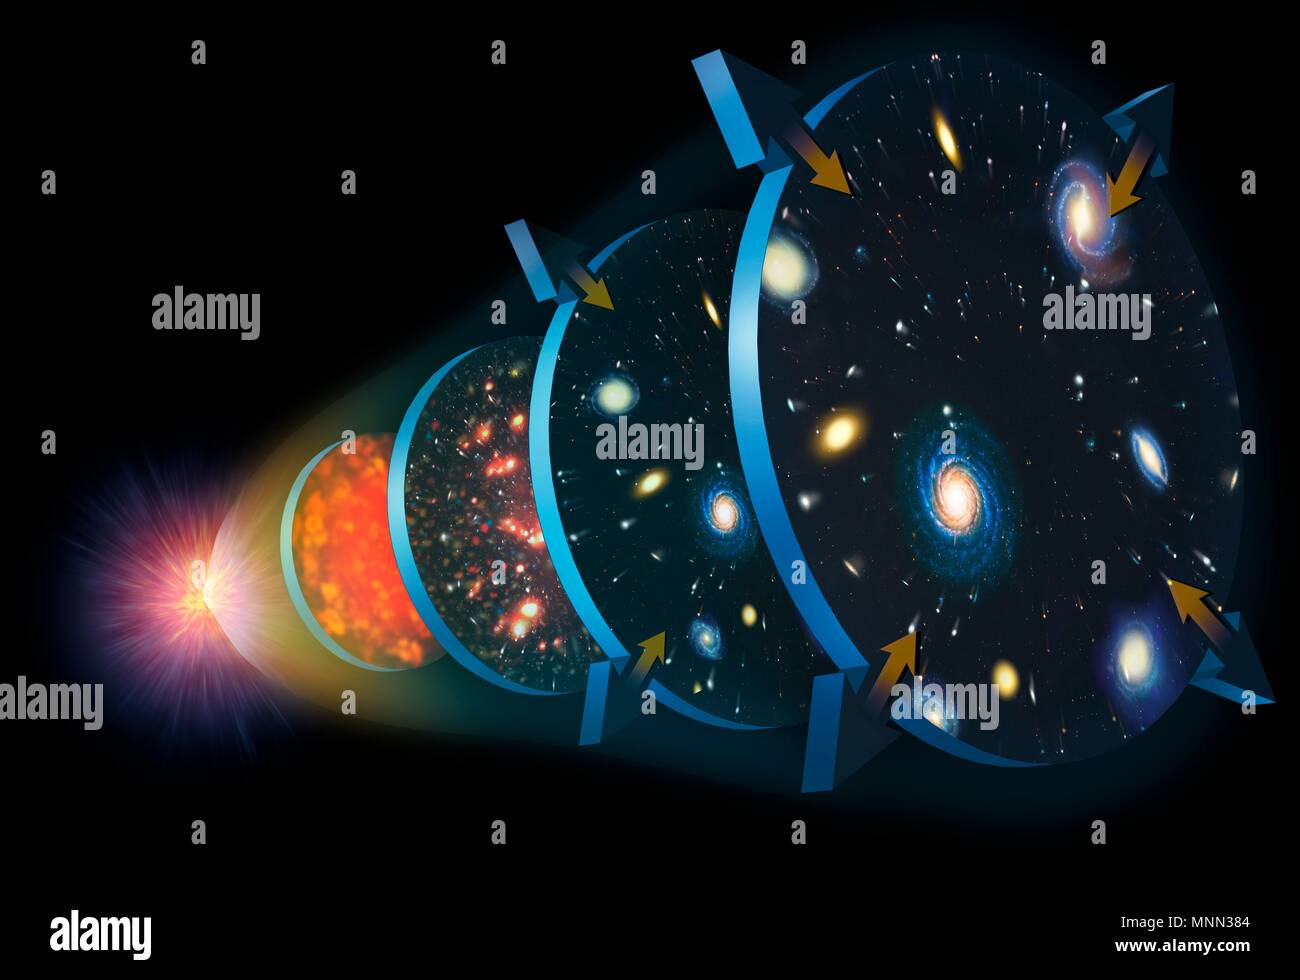 Universo immagini e fotografie stock ad alta risoluzione - Alamy